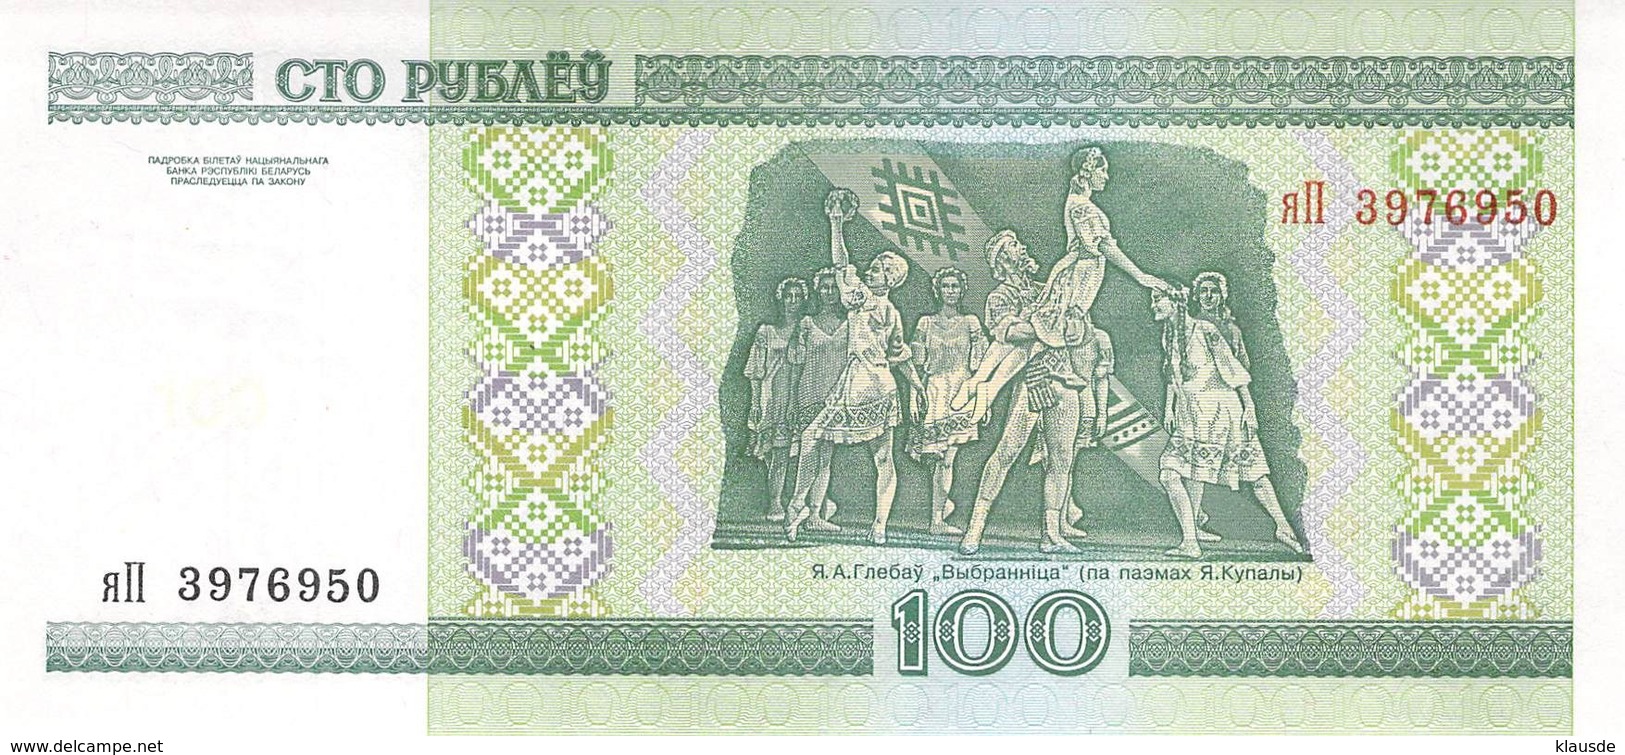 100 Pybaey Transnistrischen Moldauische Republik 2000 - Moldawien (Moldau)